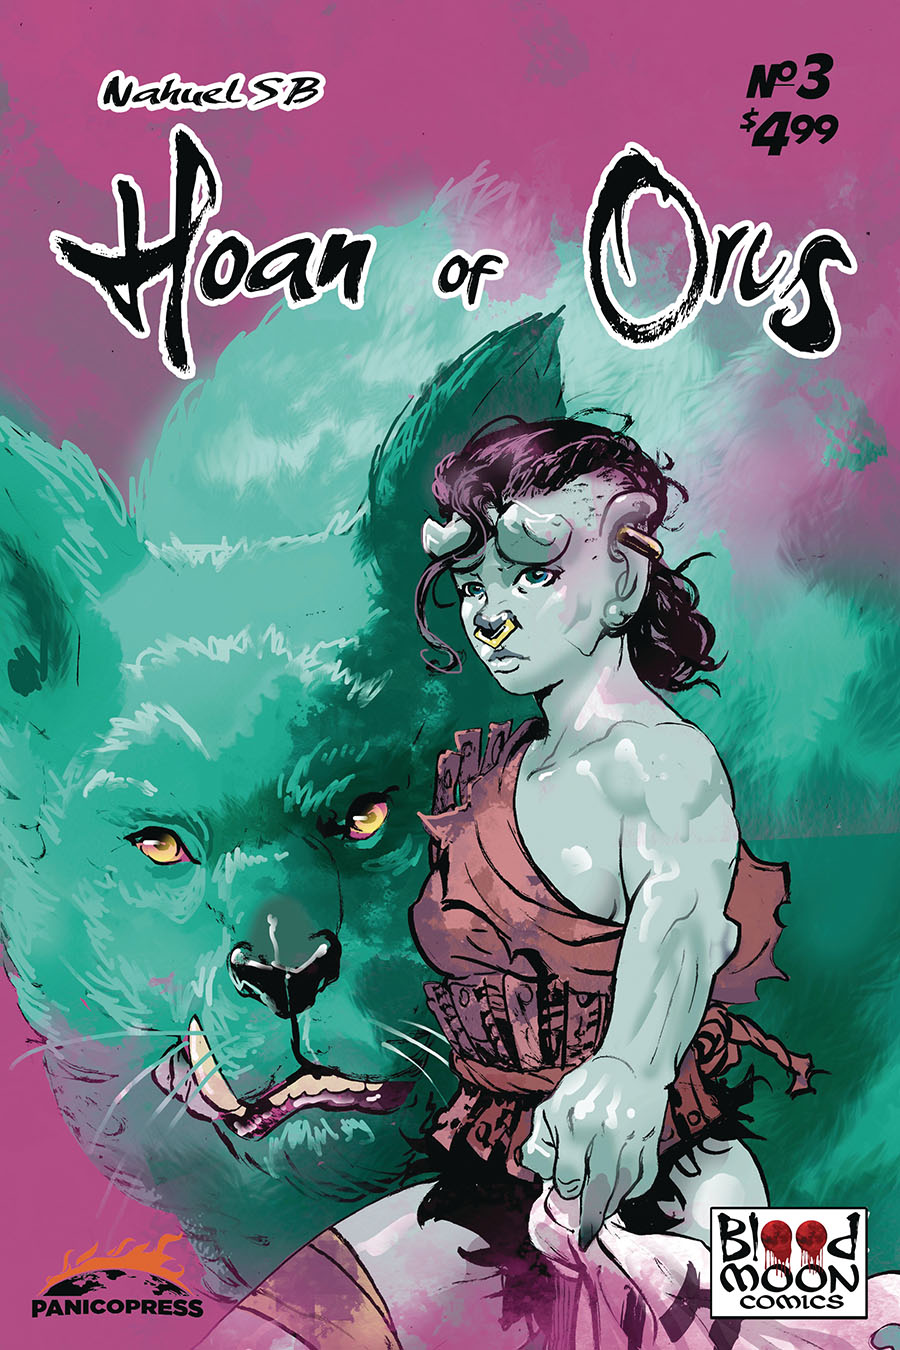 Hoan Of Orcs #3 Cover A Regular Nahuel Sb Cover